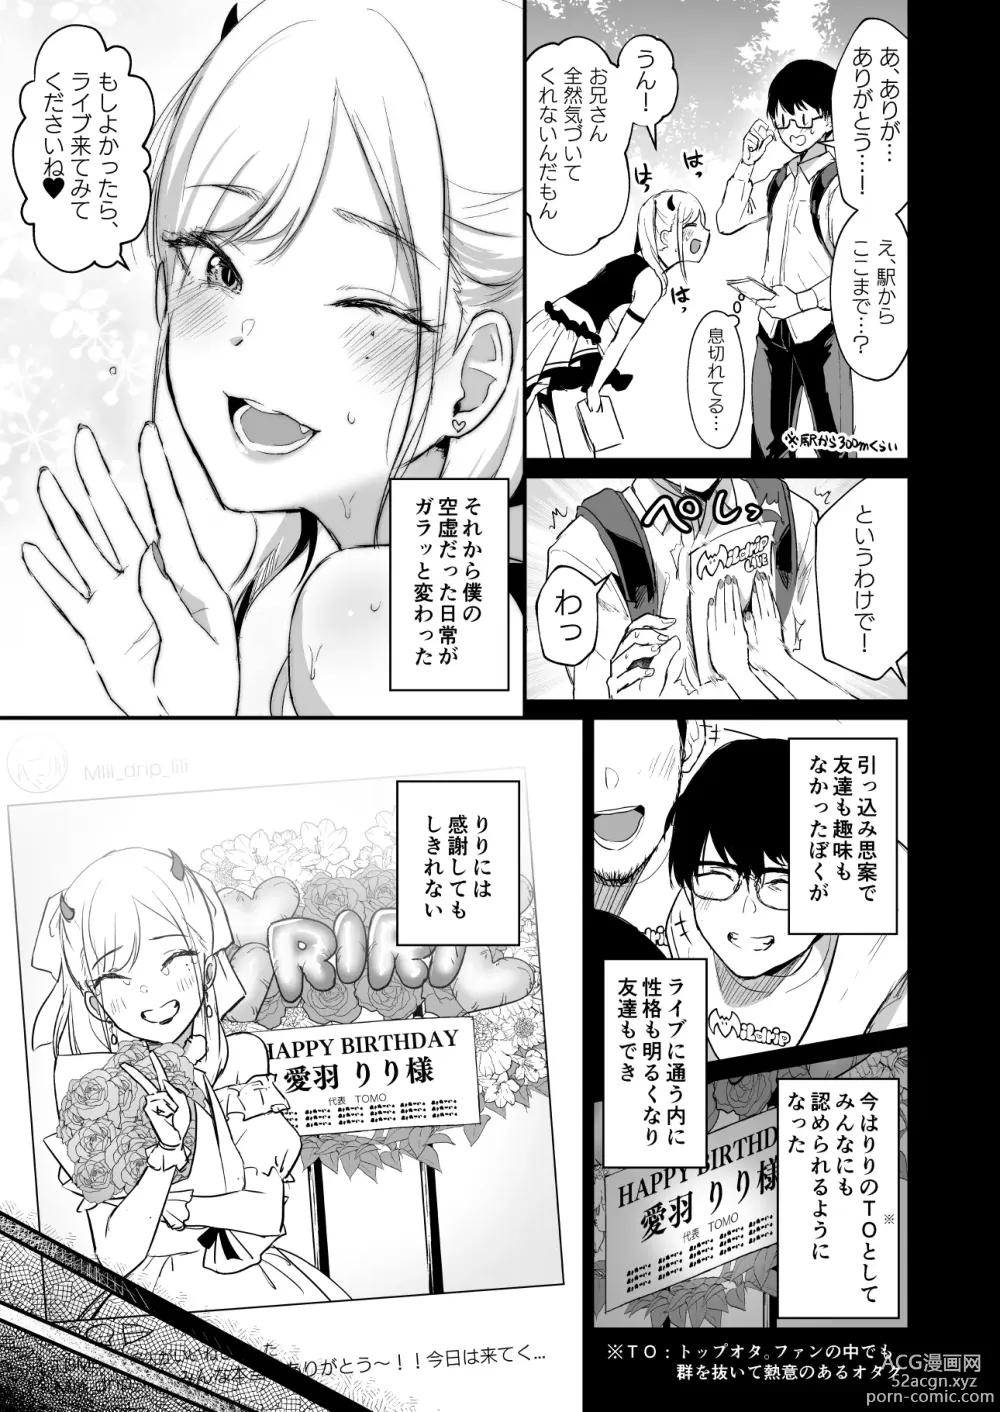 Page 6 of doujinshi 推しとエッチなことなんて無理無理無理～!!